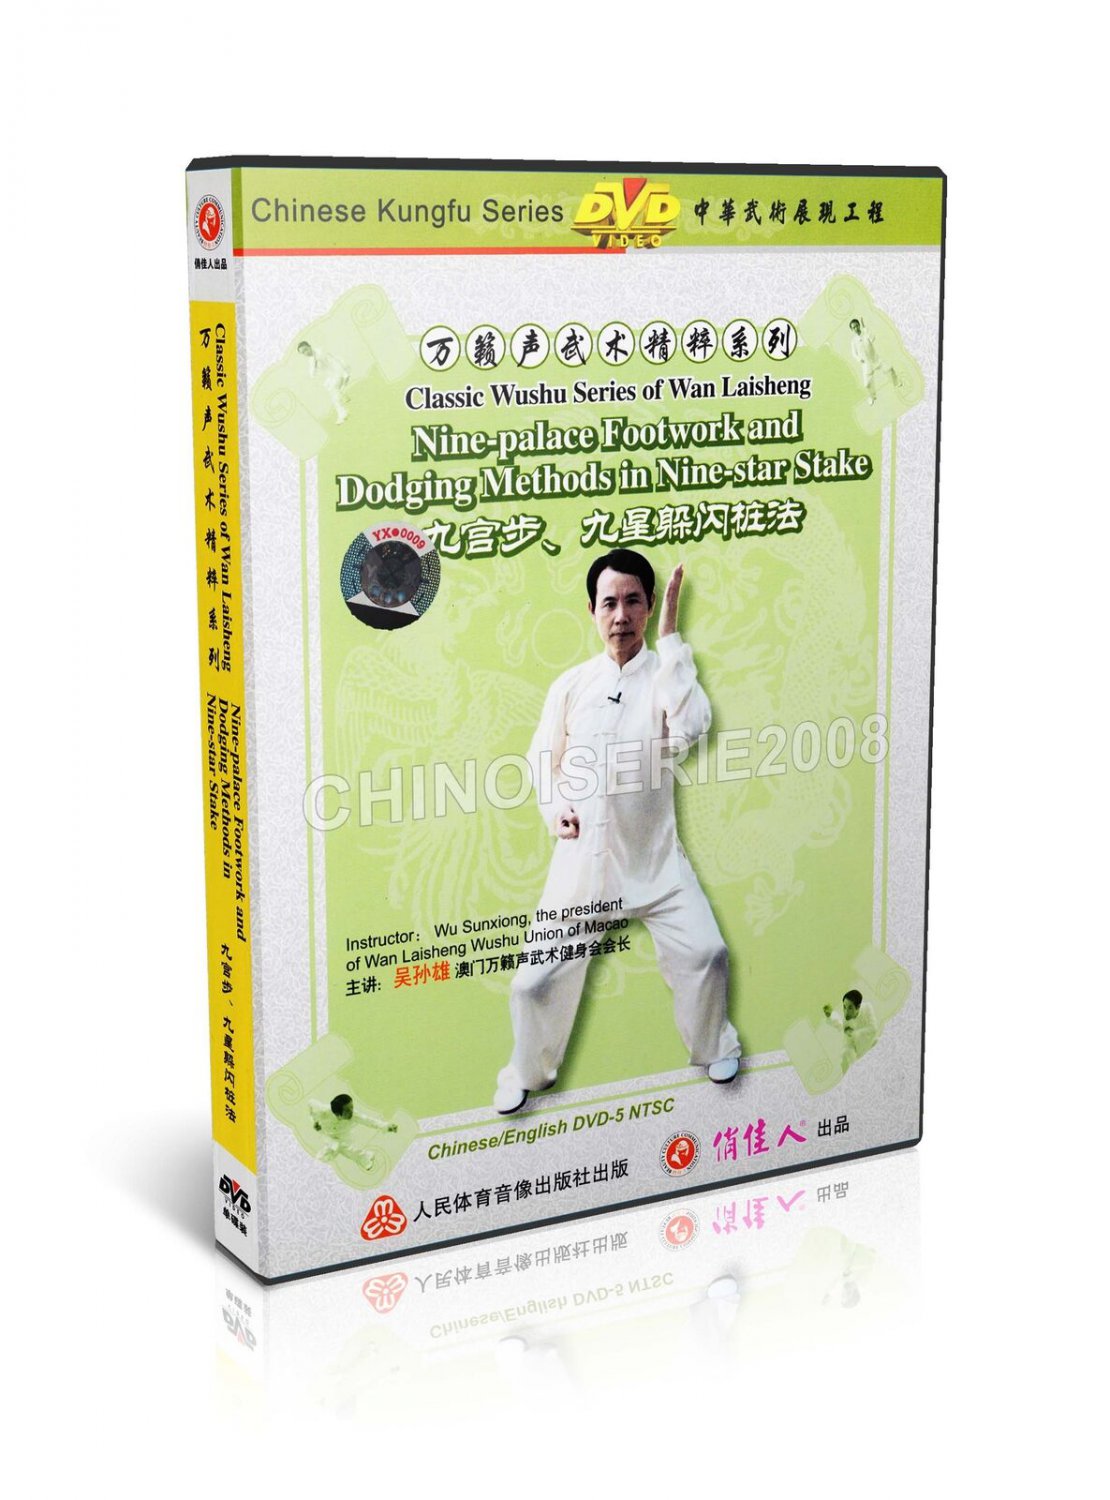 Wan Laisheng Wushu 9 Palace Footwork & Dodging Methods in 9 Star Stake DVD